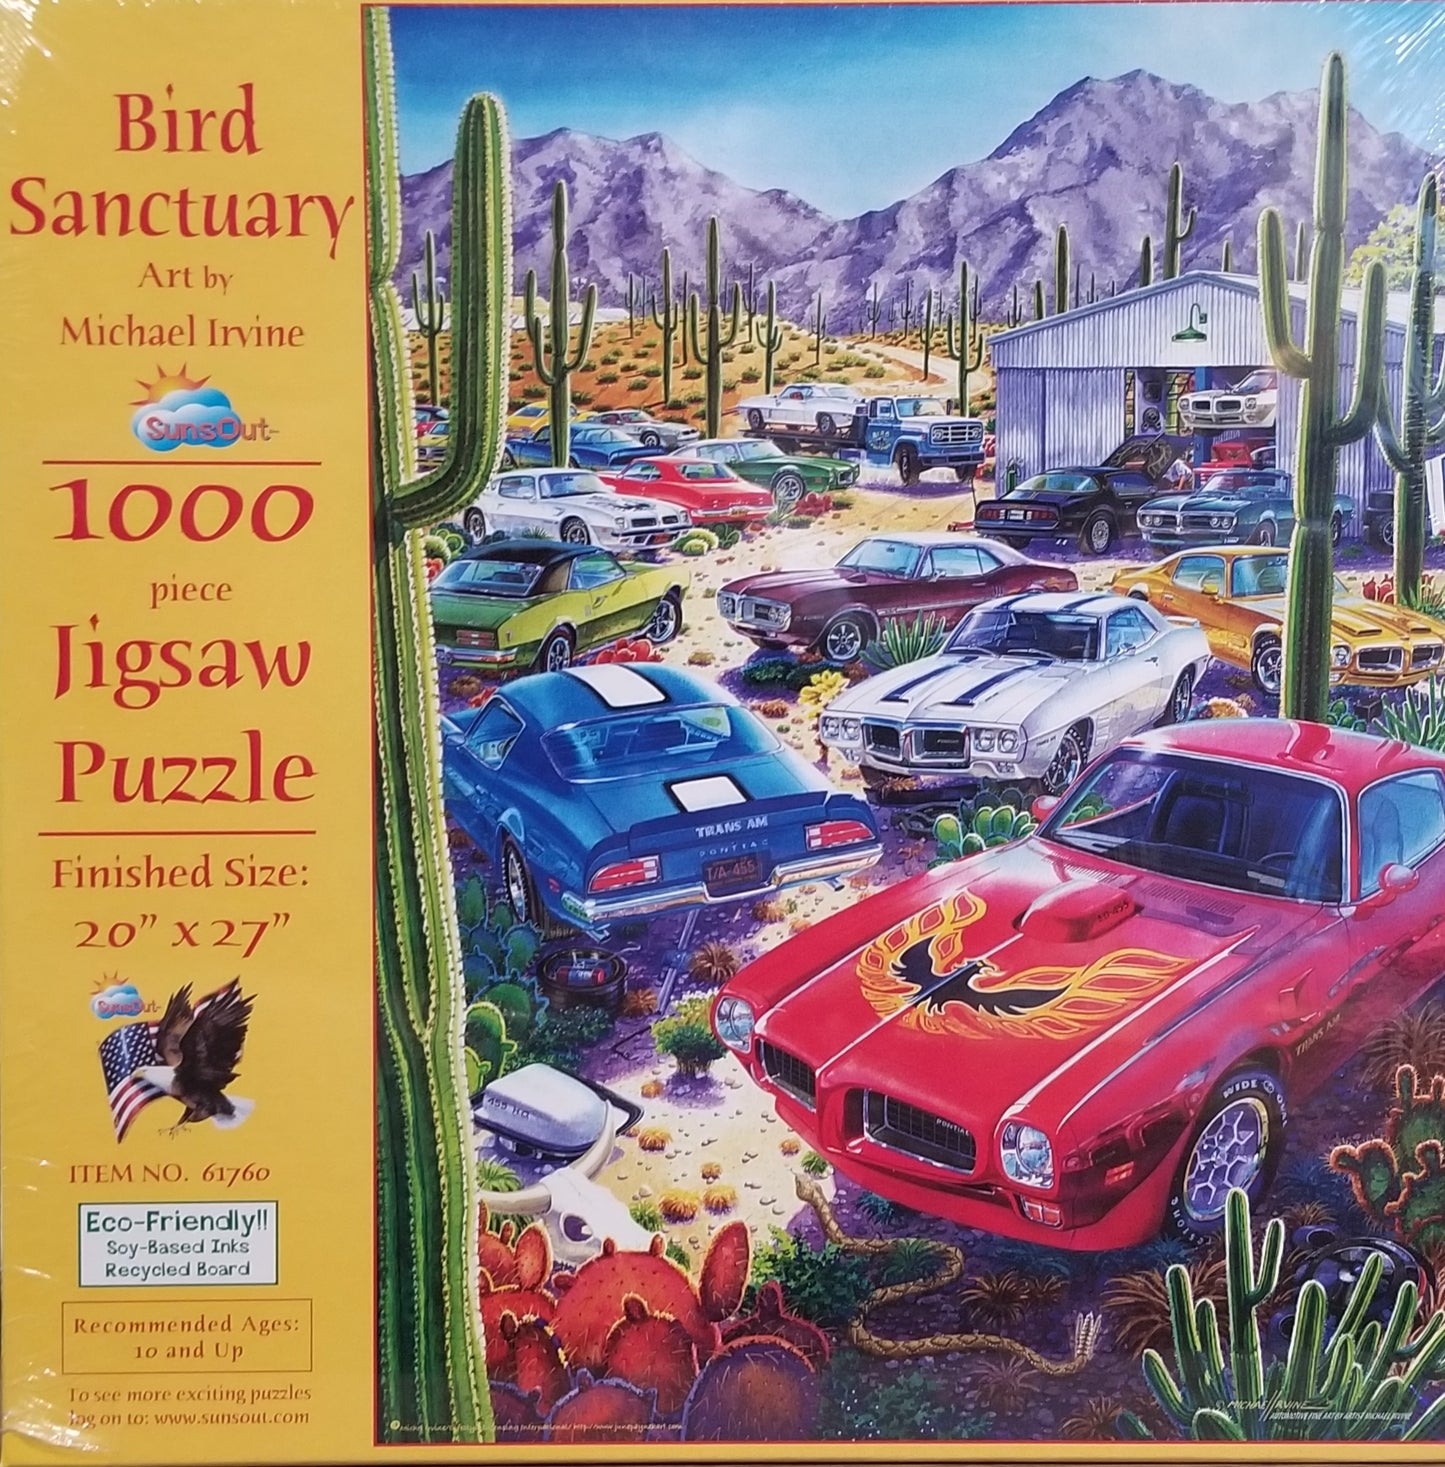 Bird Sanctuary af Michael Irvine, 1000 brikker puslespil